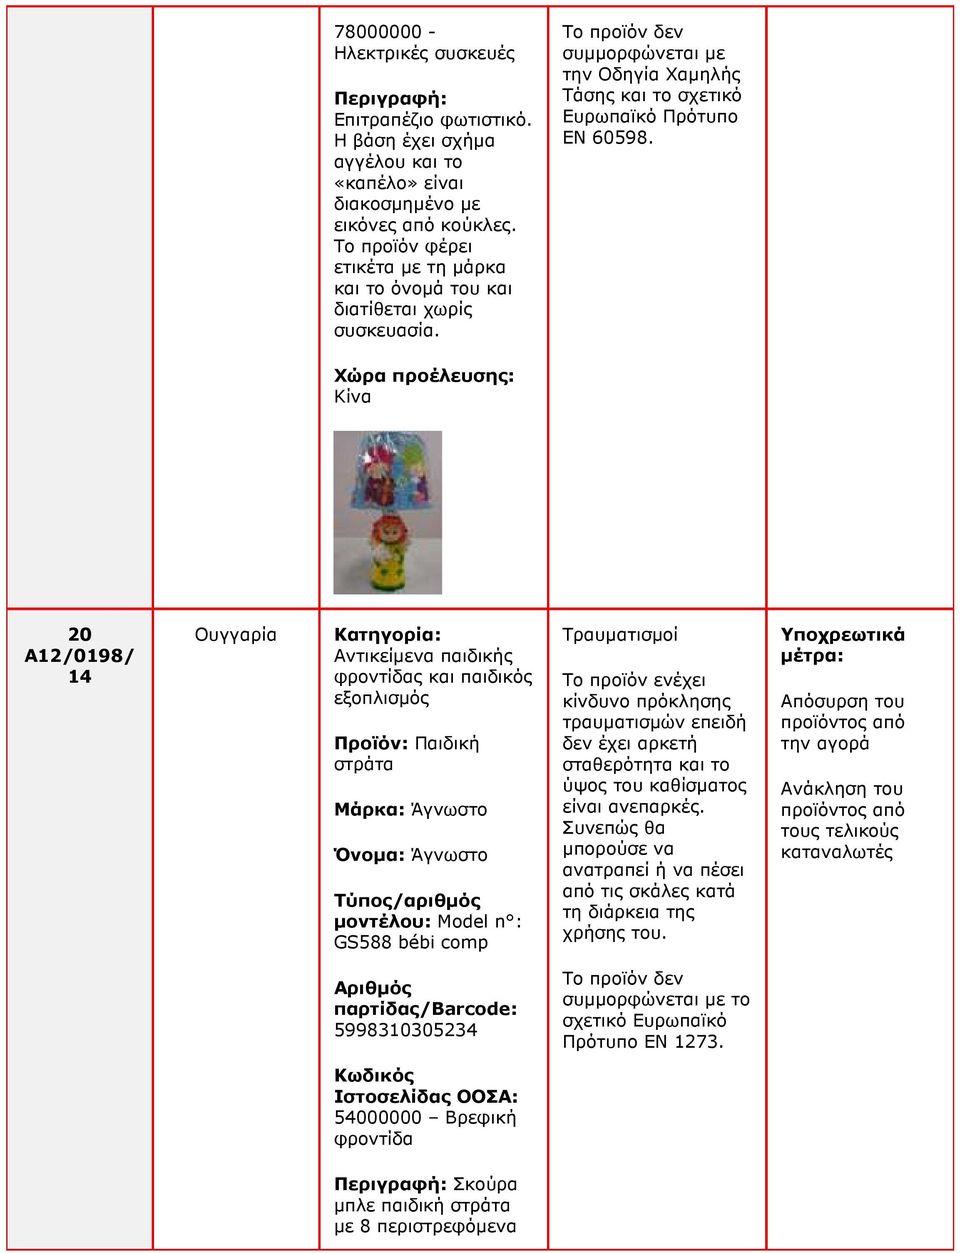 20 A12/0198/ Ουγγαρία Κατηγορία: Αντικείµενα παιδικής φροντίδας και παιδικός εξοπλισµός Προϊόν: Παιδική στράτα Μάρκα: Άγνωστο Όνοµα: Άγνωστο µοντέλου: Model n : GS588 bébi comp Τραυµατισµοί Το προϊόν